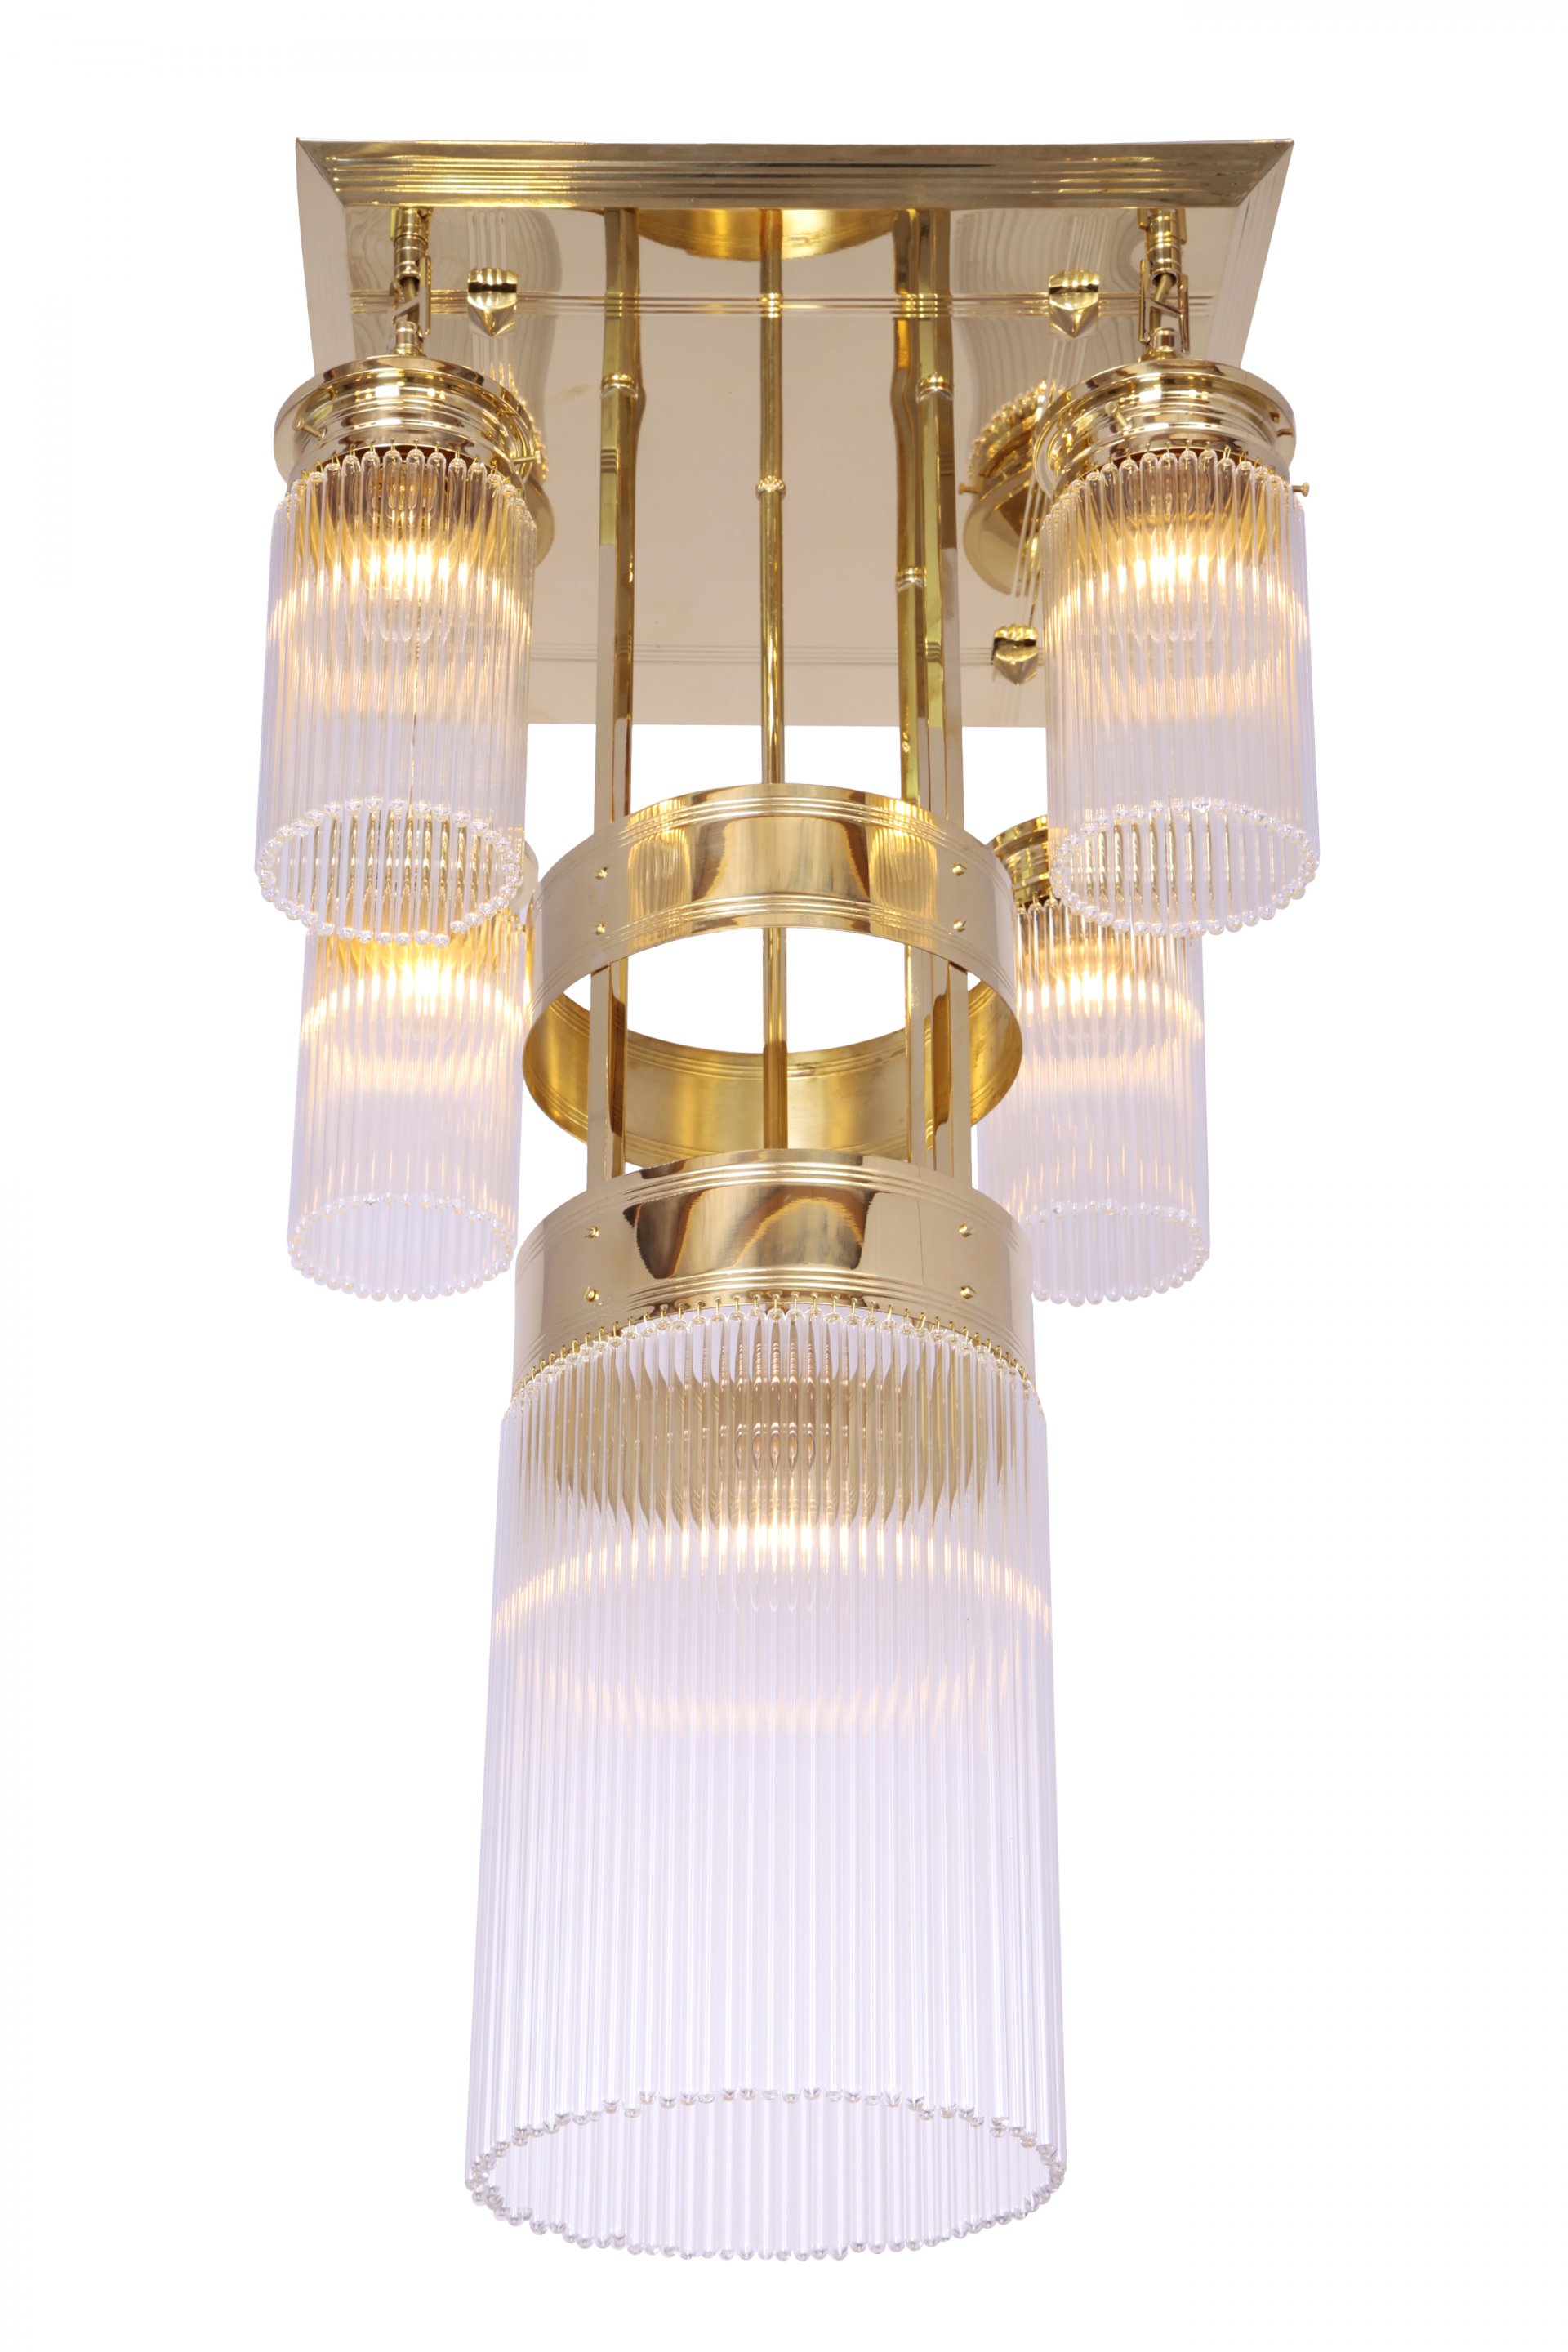 Wiener mennyezeti lámpa III., exkluzív, kézzel készített  sárgaréz lámpa Szecessziós stílusban